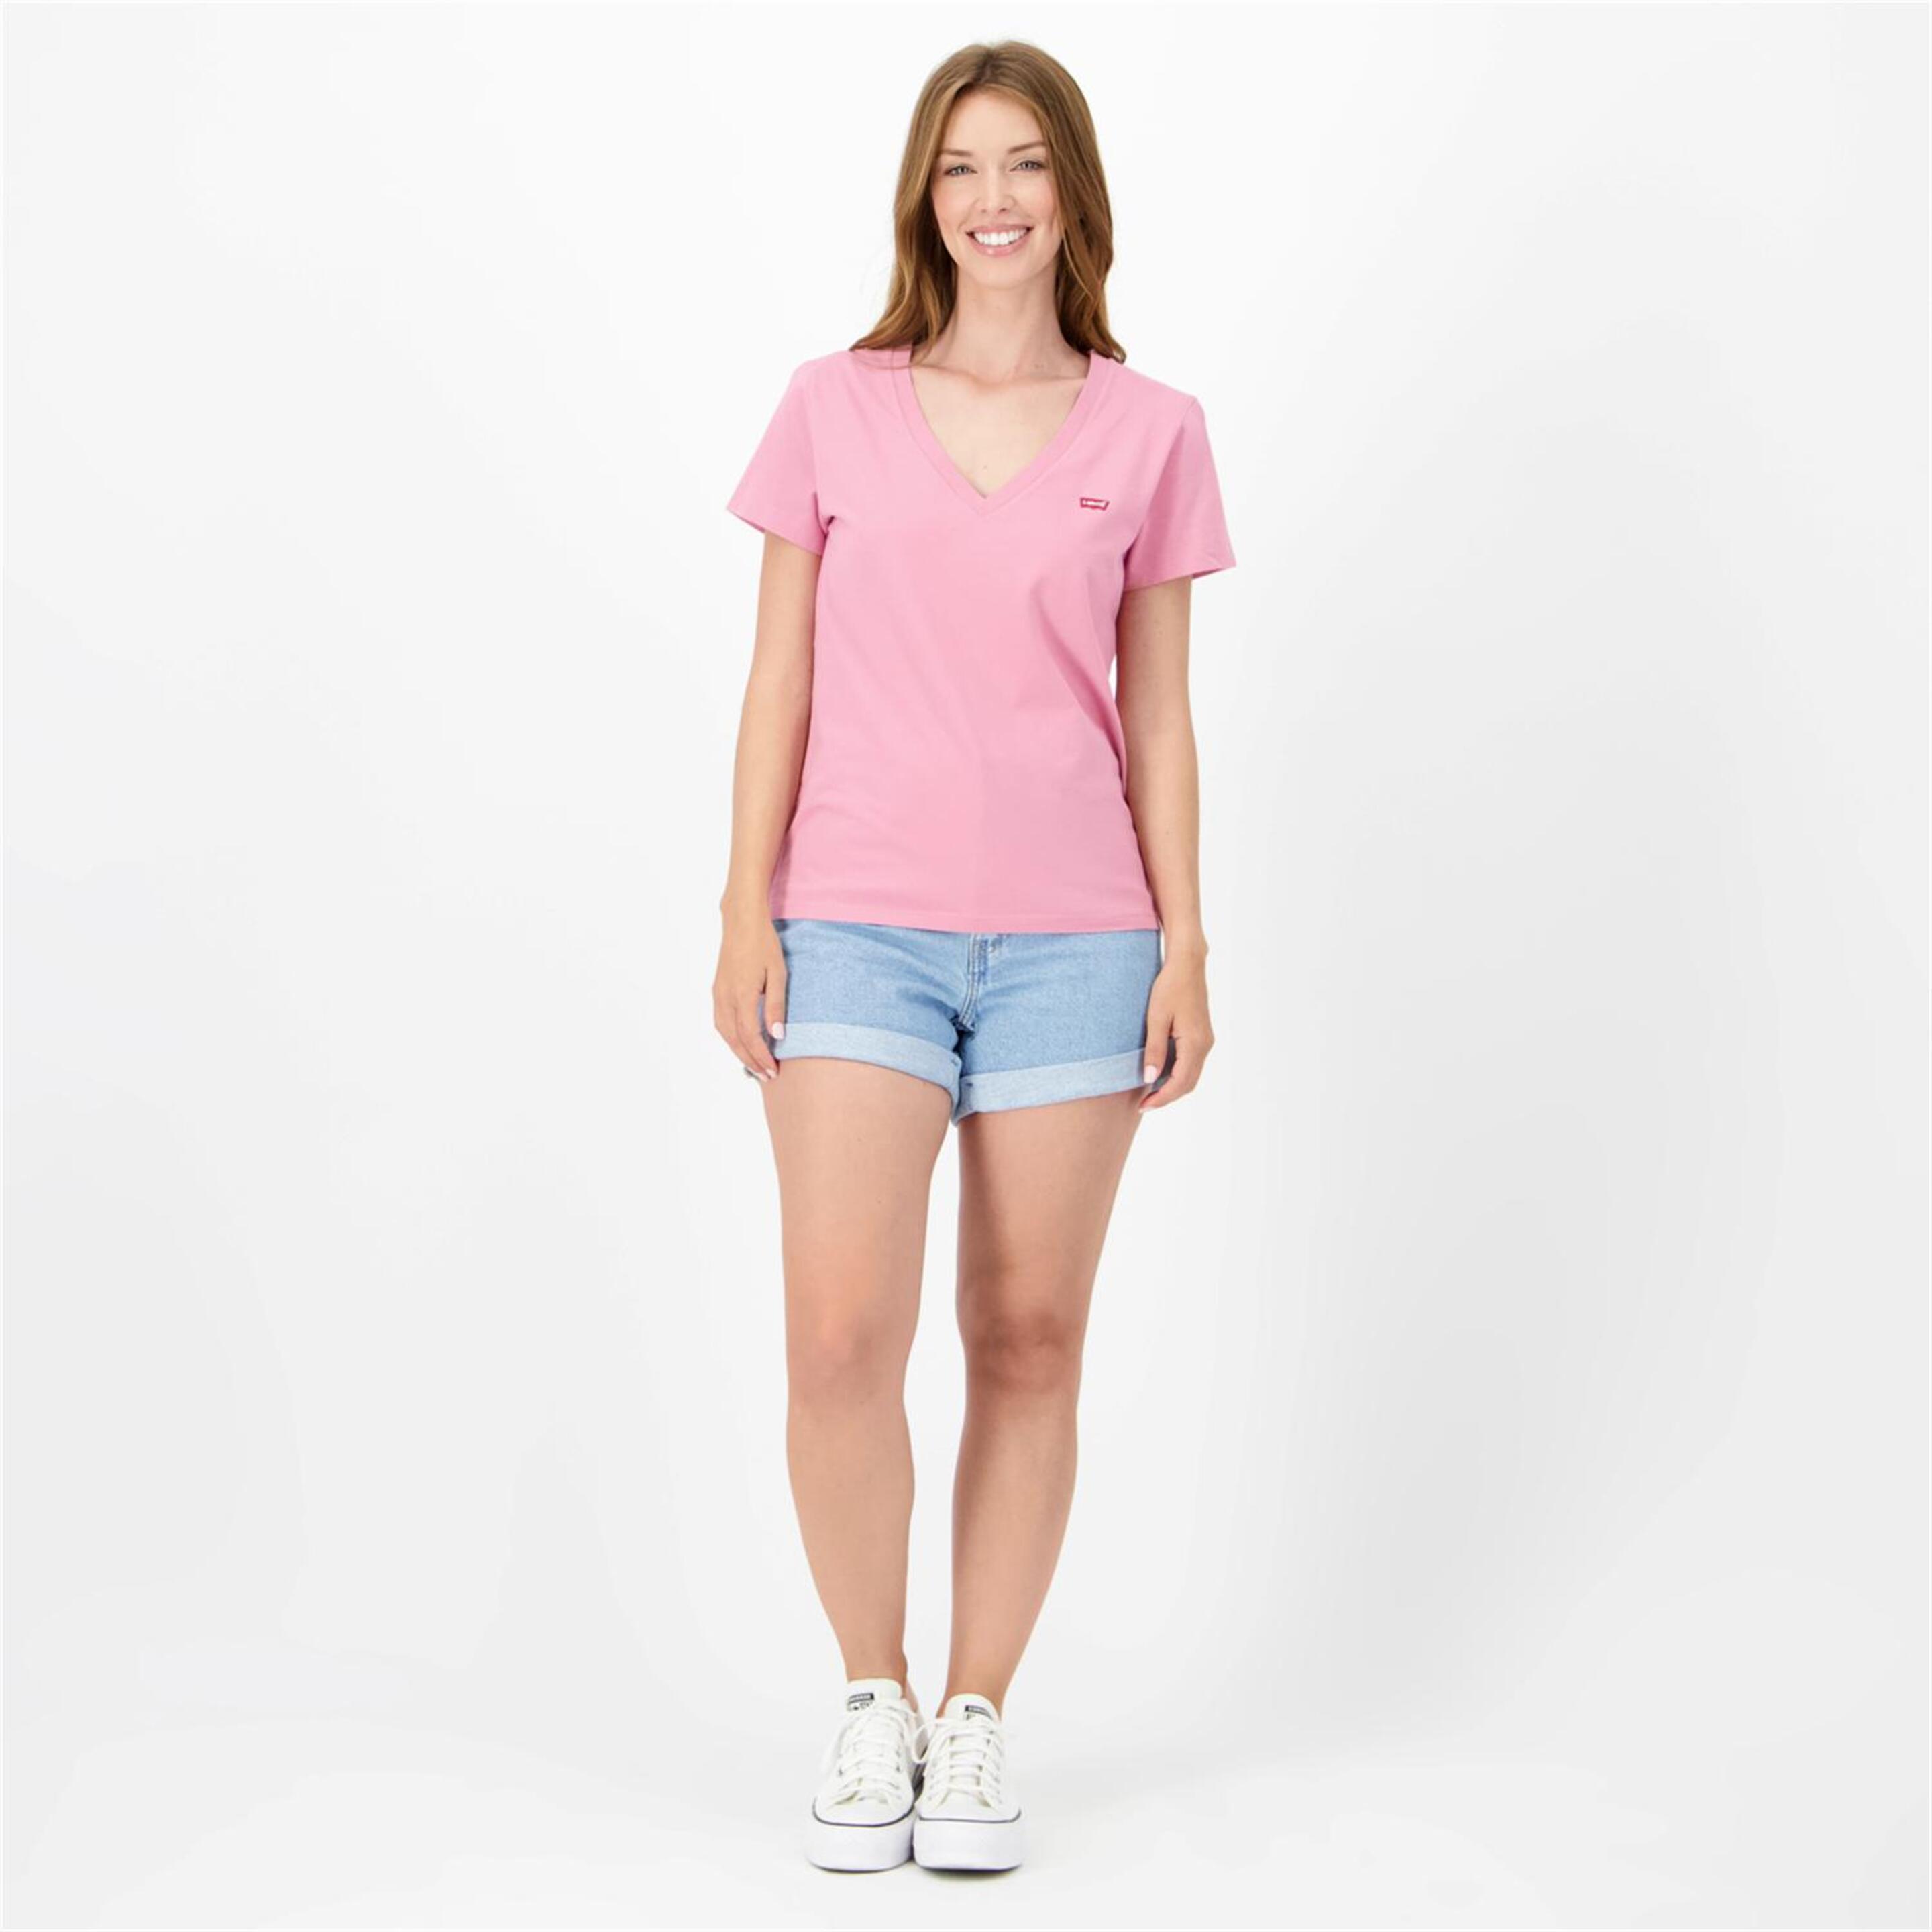 Camiseta Levi's - Rosa - Camiseta Cuello Pico Mujer